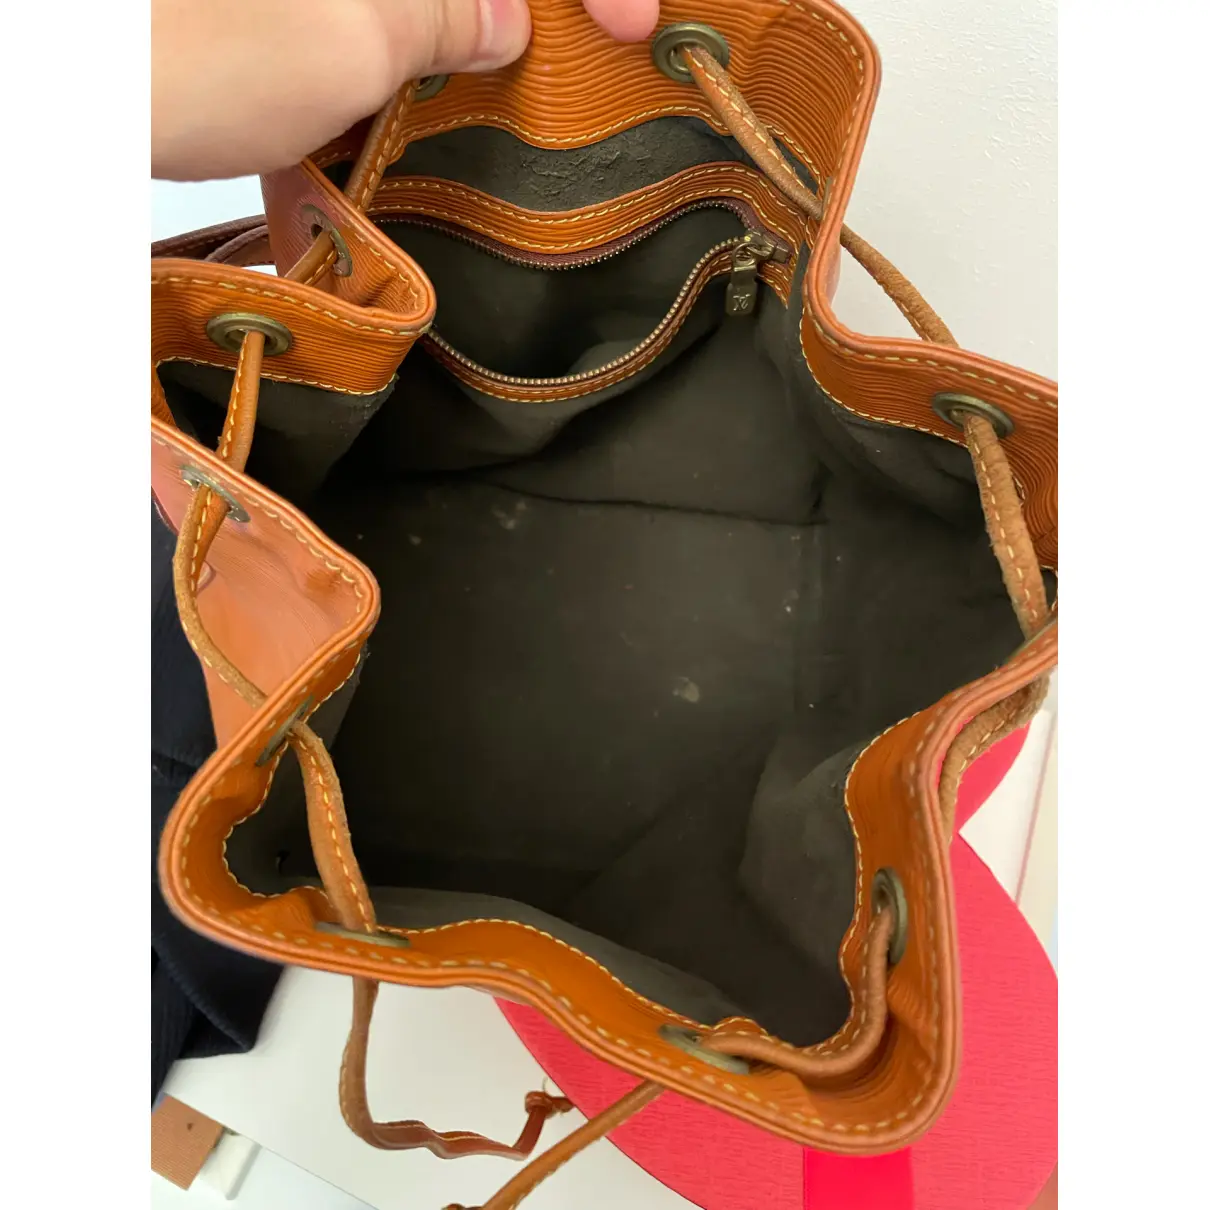 Buy Louis Vuitton Noé leather handbag online - Vintage